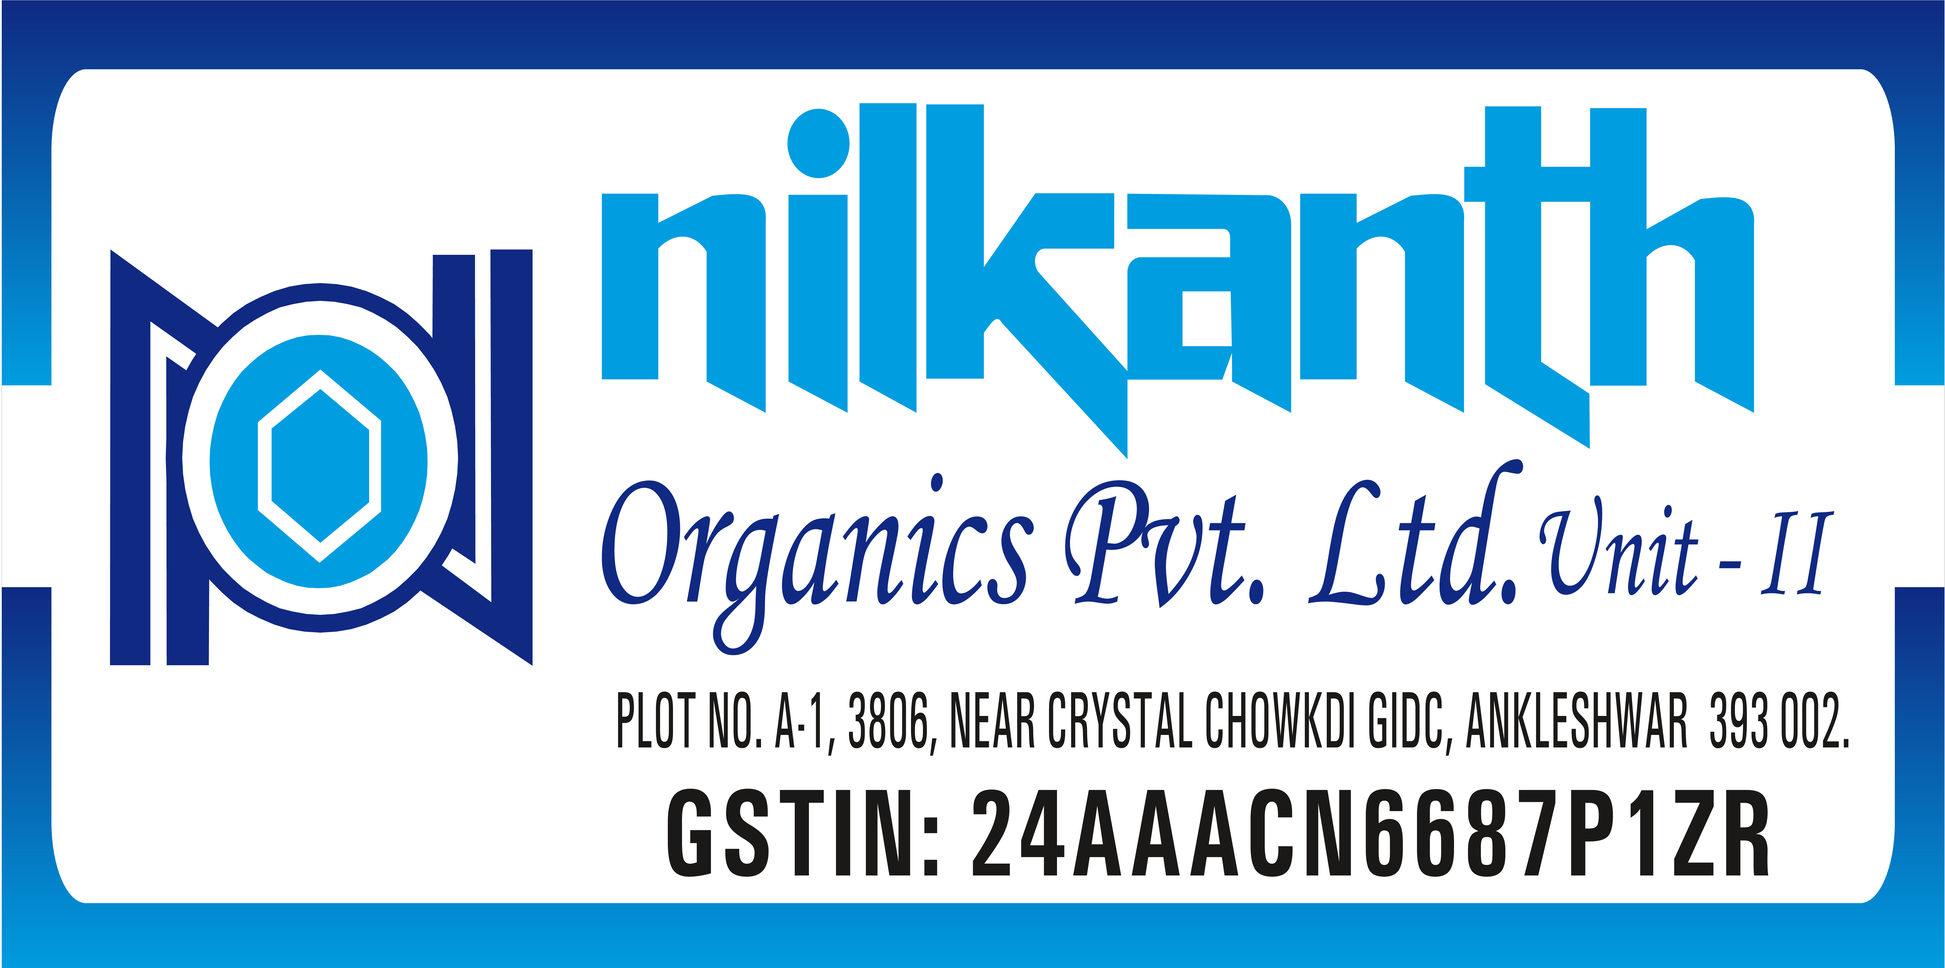 Nilkanth organics pvt ltd